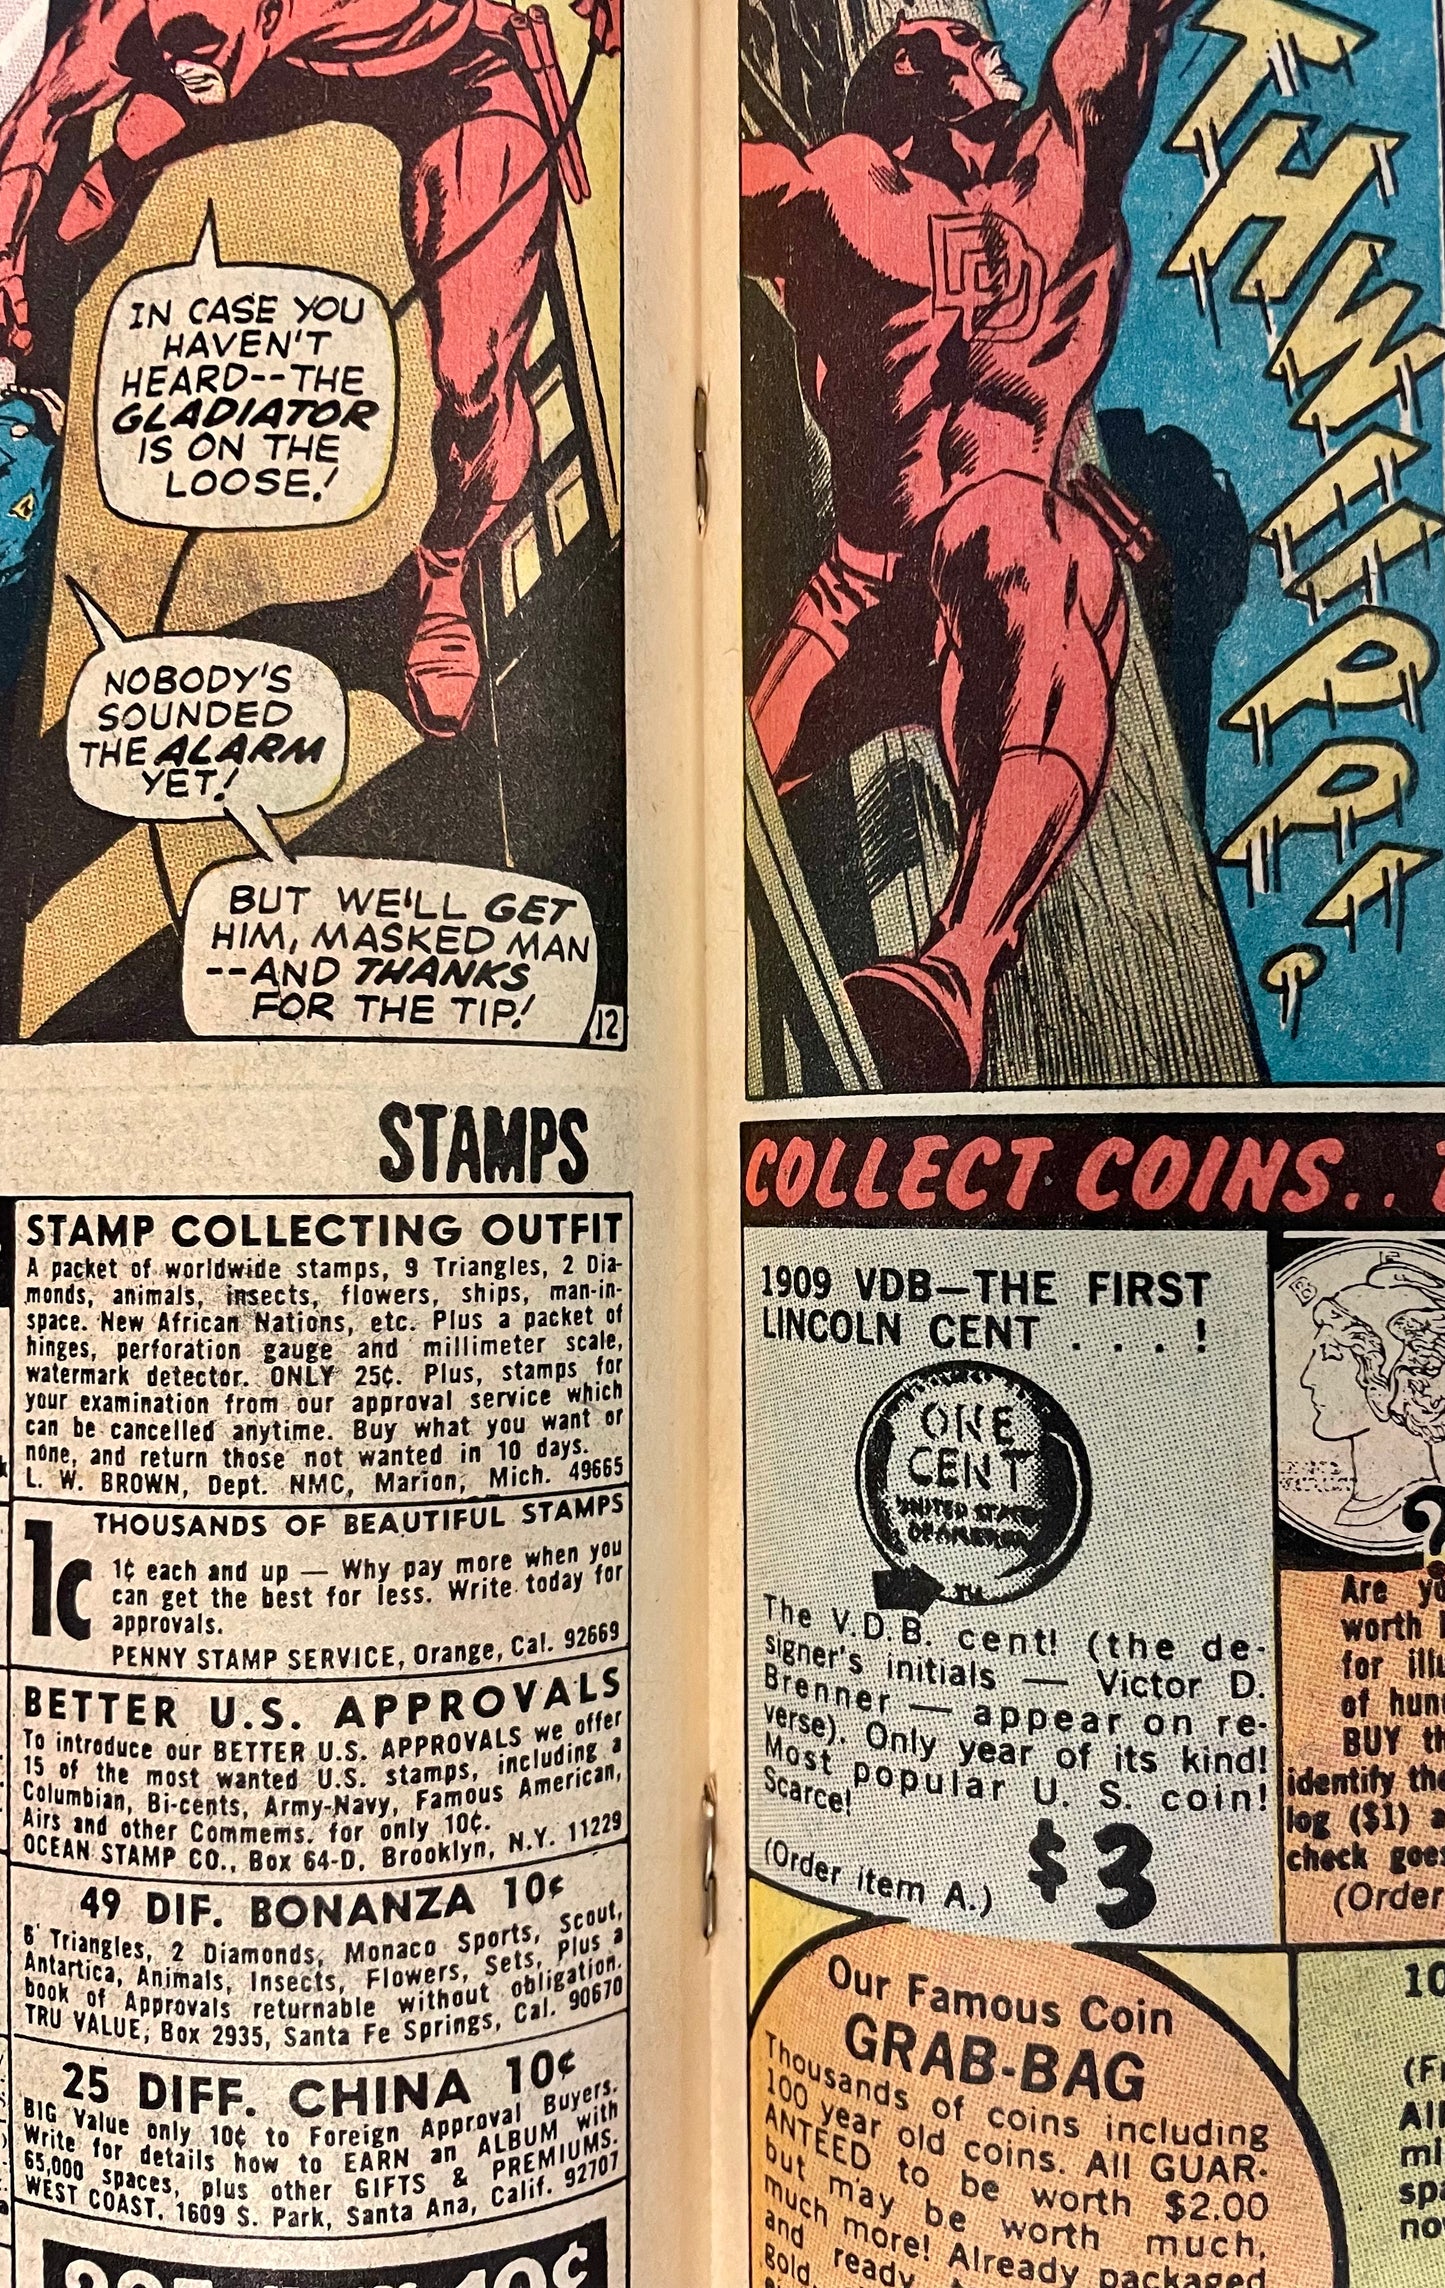 Marvel Comics Daredevil #63